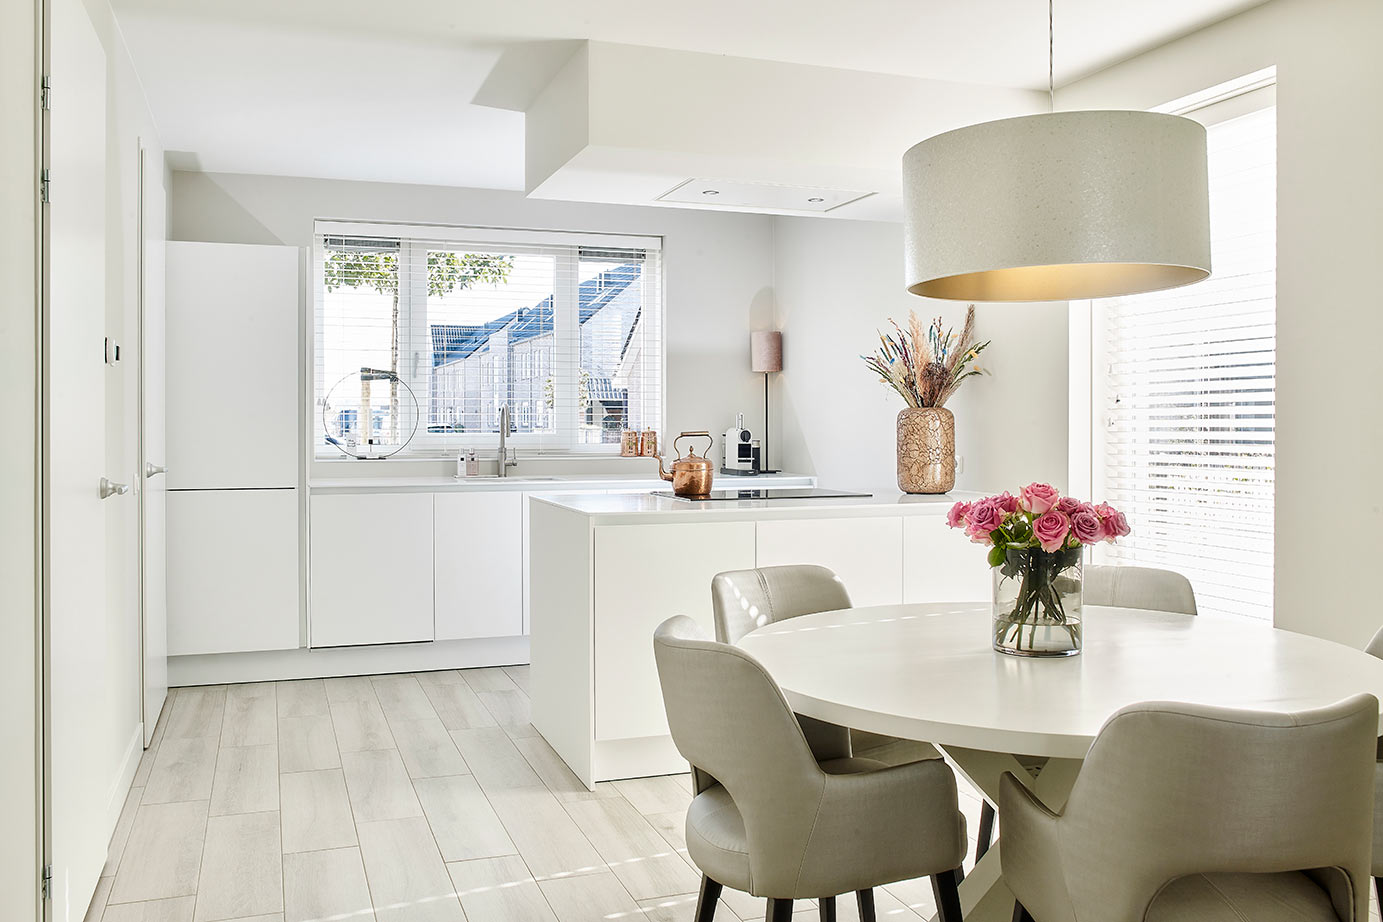 Foto: 1 Moderne witte keuken Urk